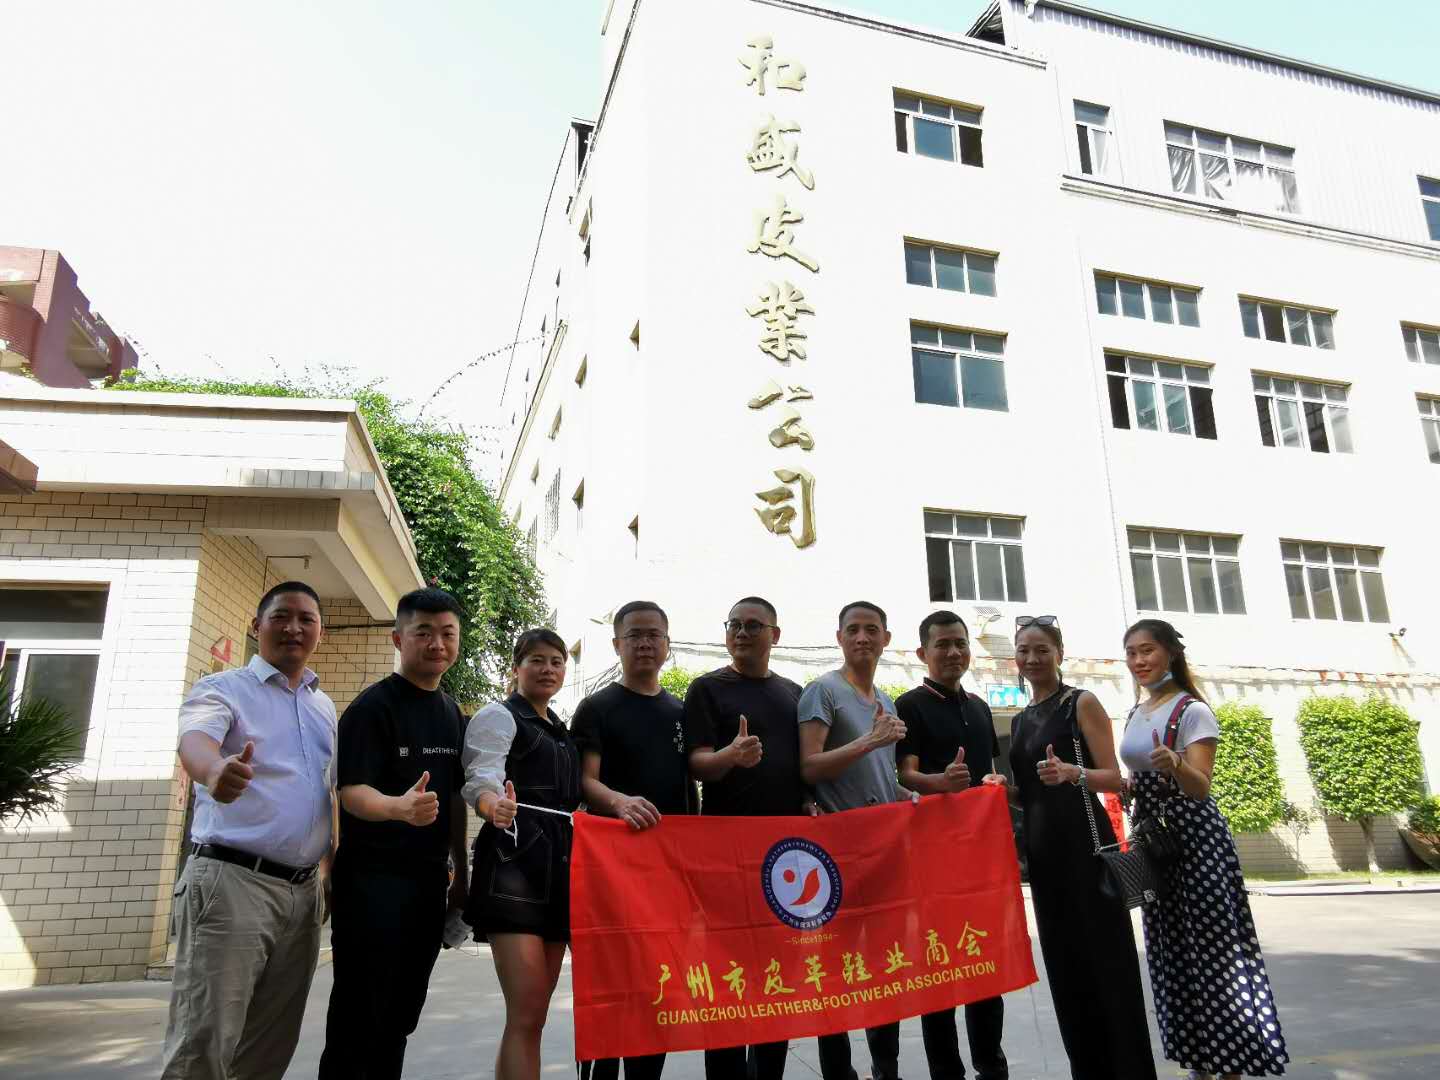 暨展同期，广州市皮革鞋业商会考察团赴晋江拜访副会长企业（和盛皮业公司）